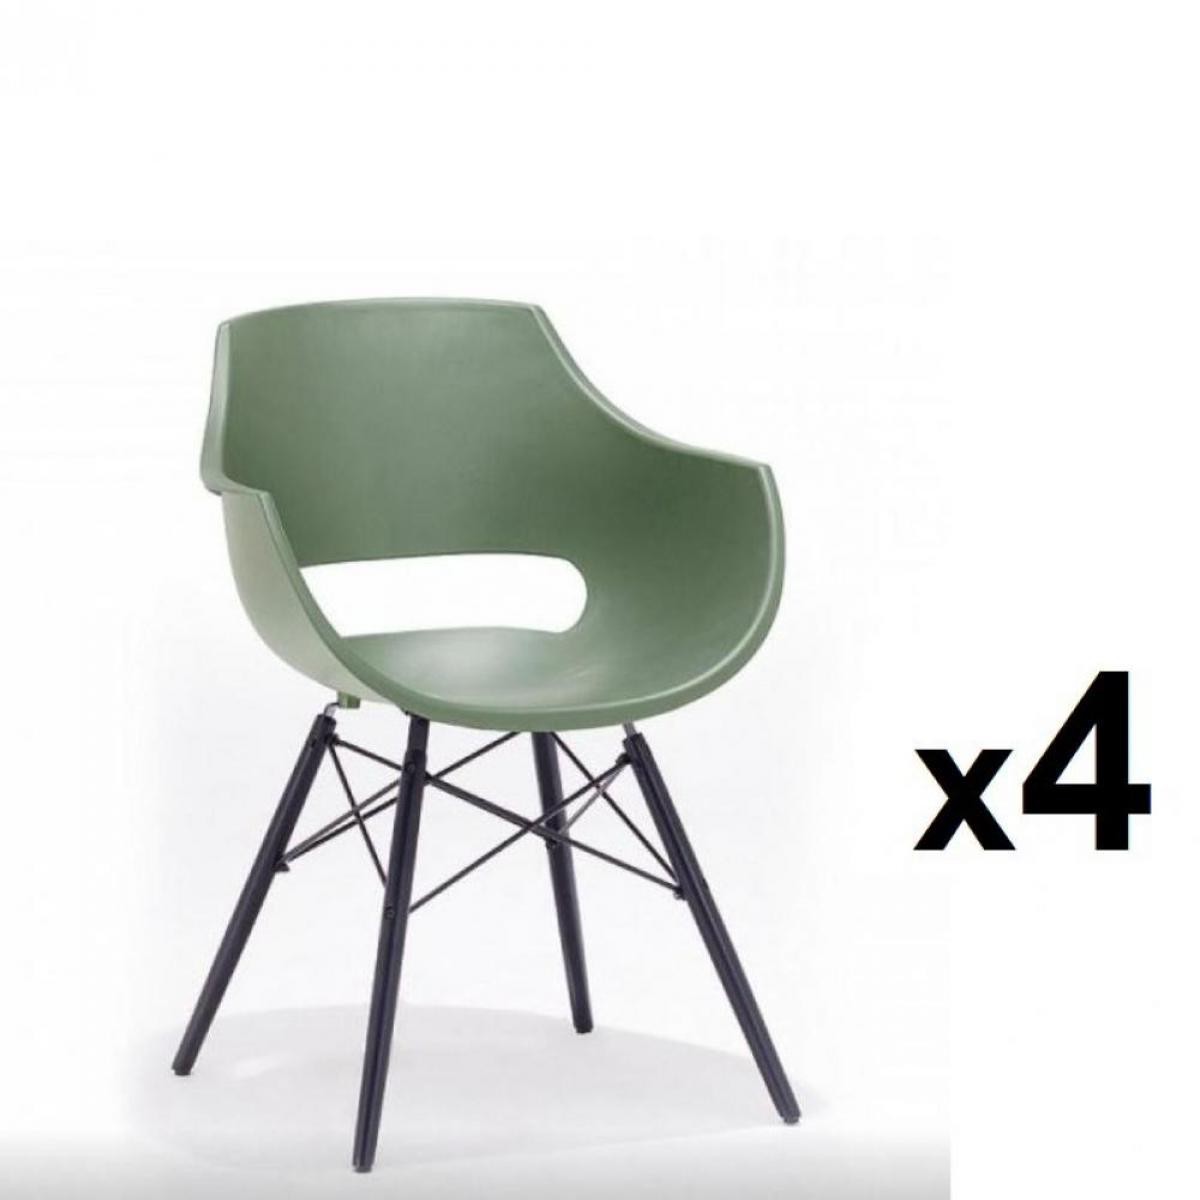 Inside 75 - Lot de 4 chaises scandinave REMO coque verte piétement hêtre laque noir mat - Chaises